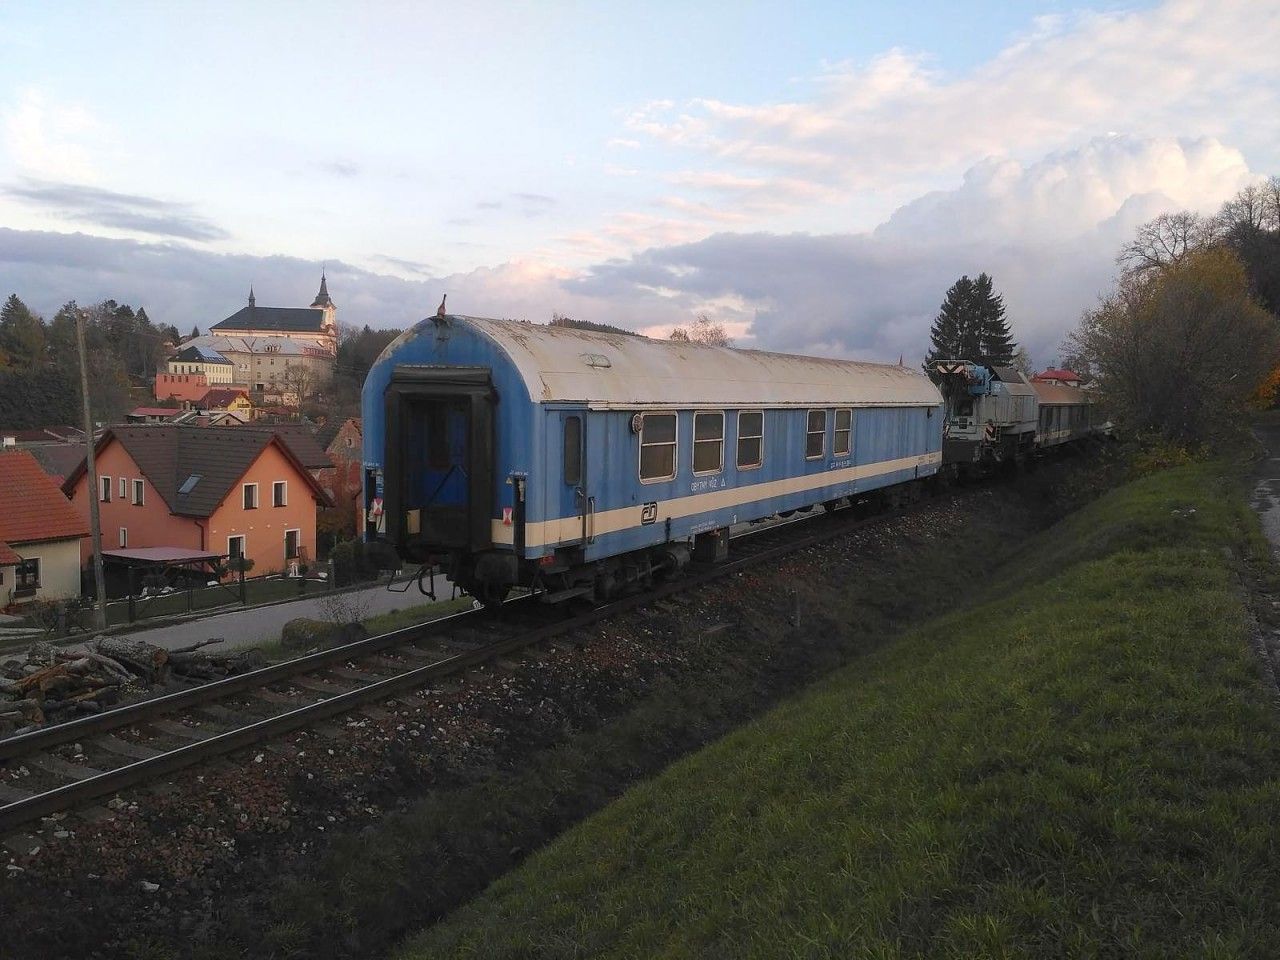 Nehodovy vlak v cele s HV 754.060 pred zastavkou Nova Paka mesto, 29.10.2019